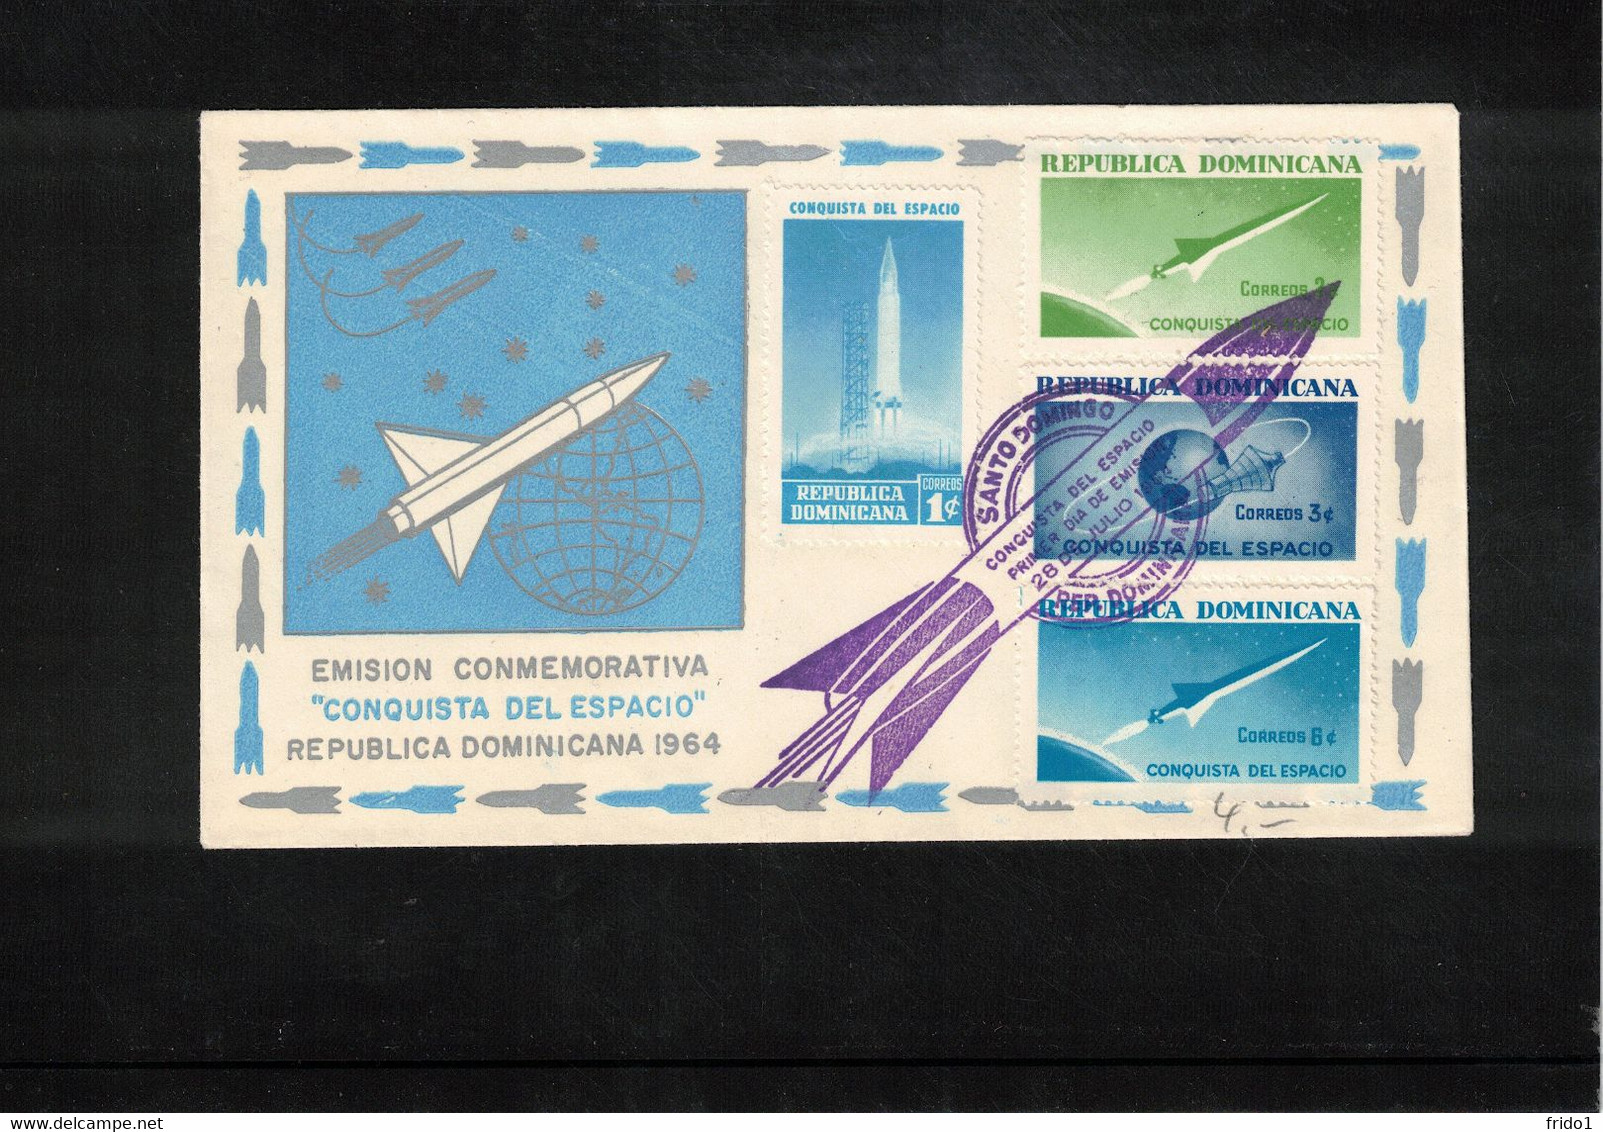 Dominican Republic 1964 Space / Raumfahrt FDC - Amérique Du Sud